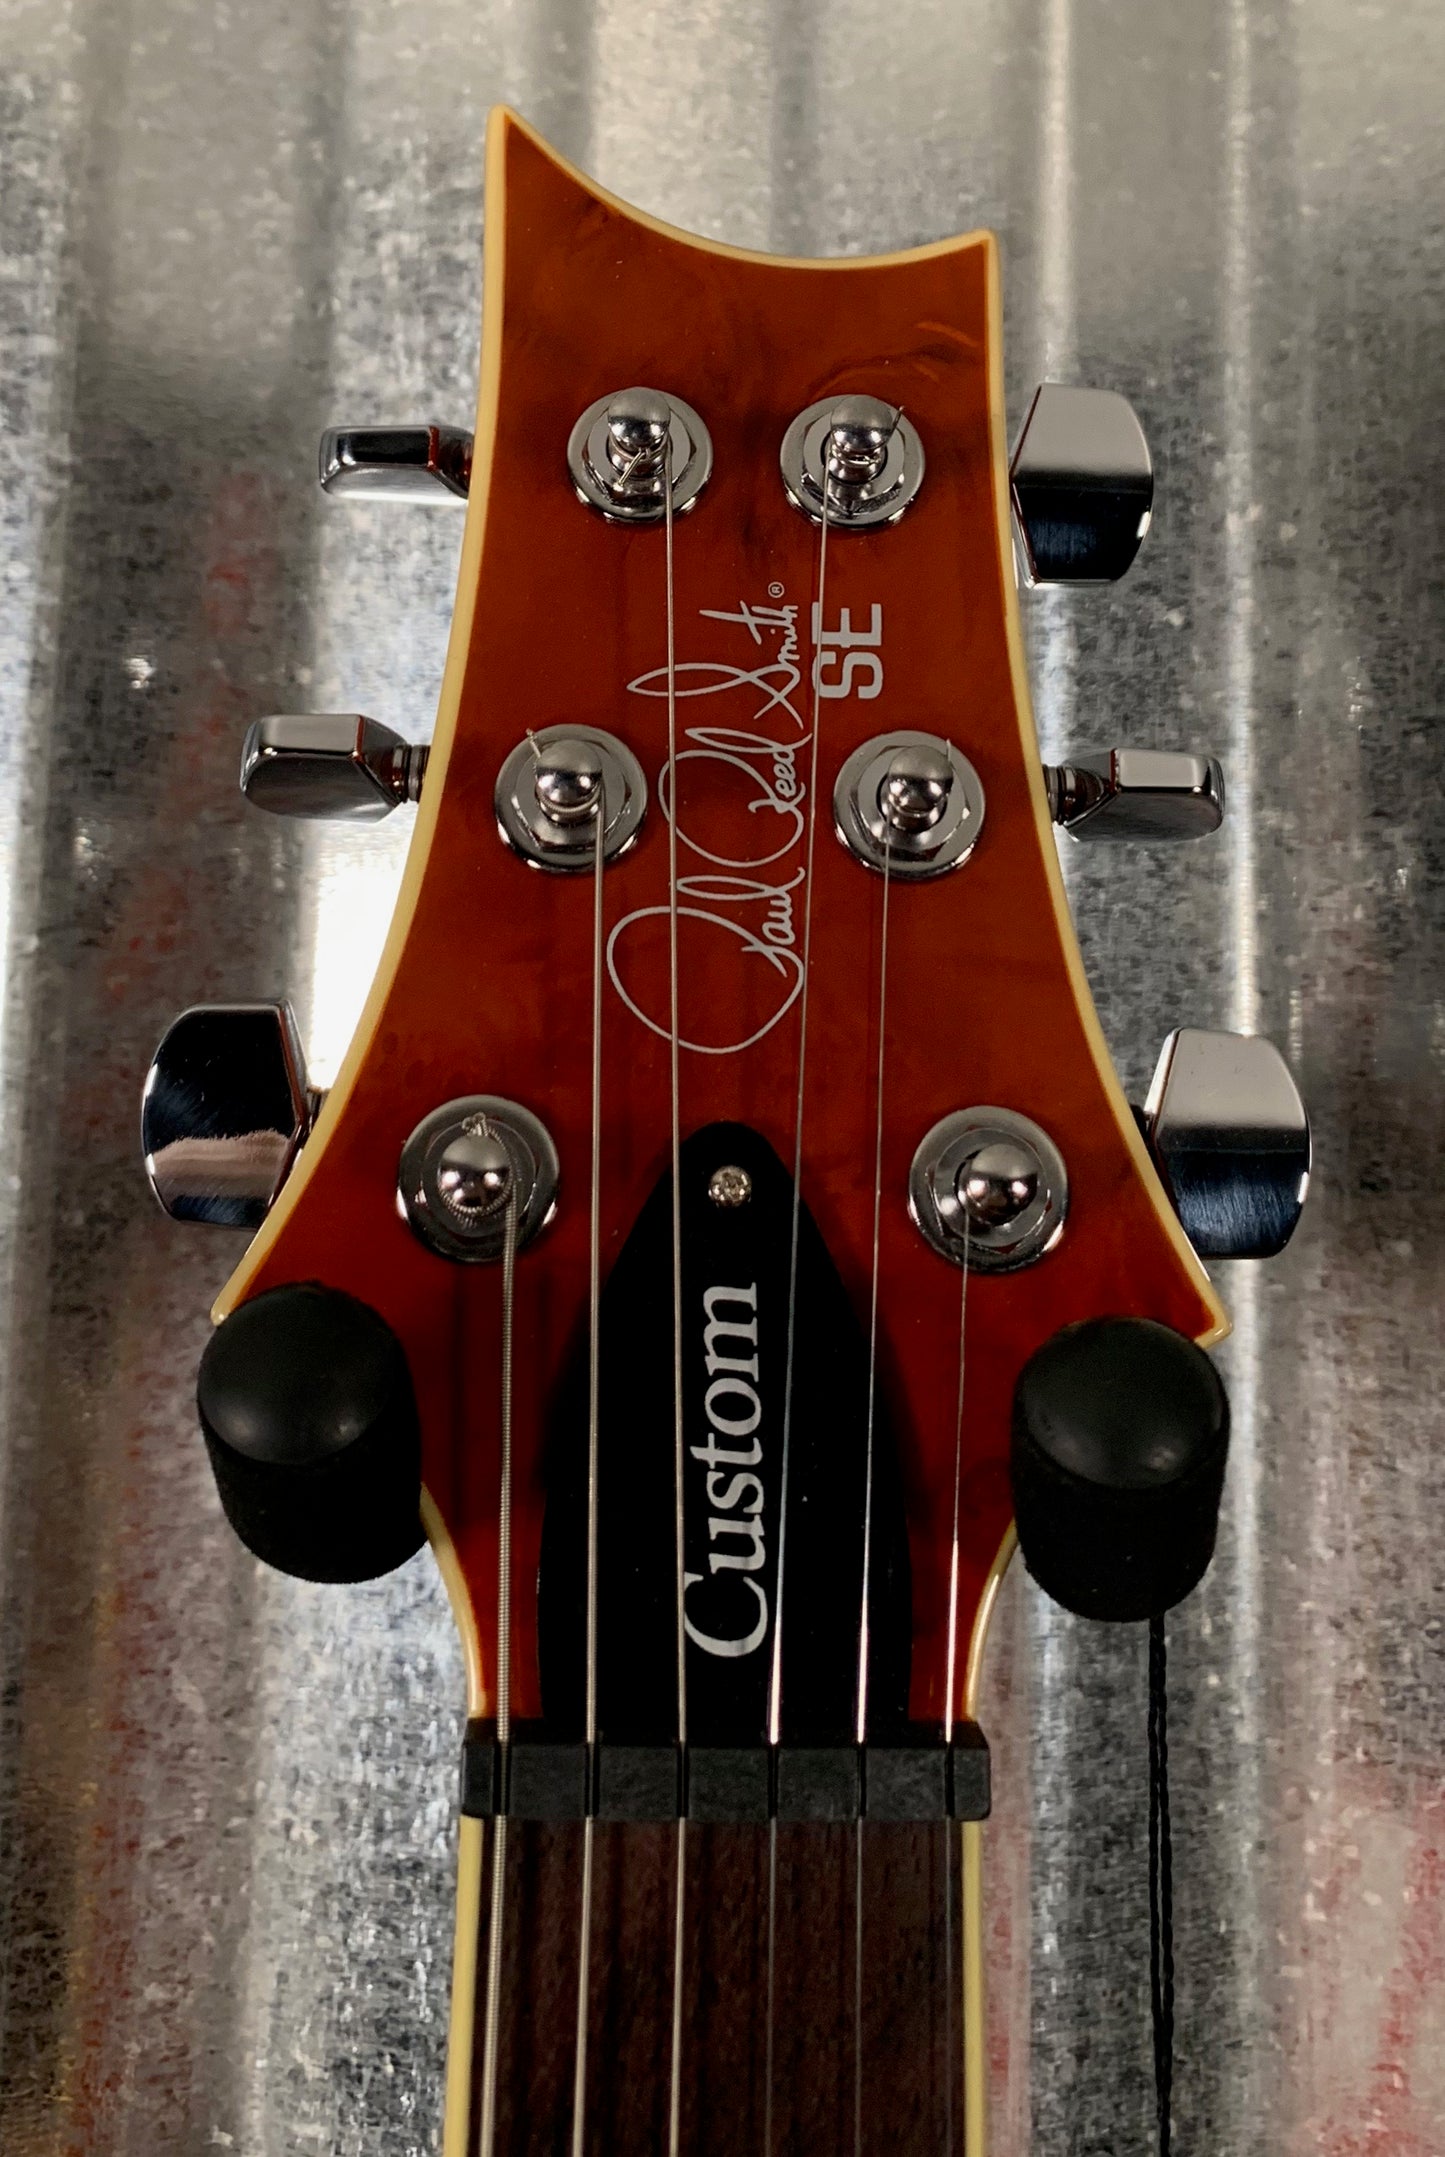 PRS Paul Reed Smith SE Custom 24 Laurel Burl Top Vintage Sunburst Guitar Gig Bag 2018 #3480